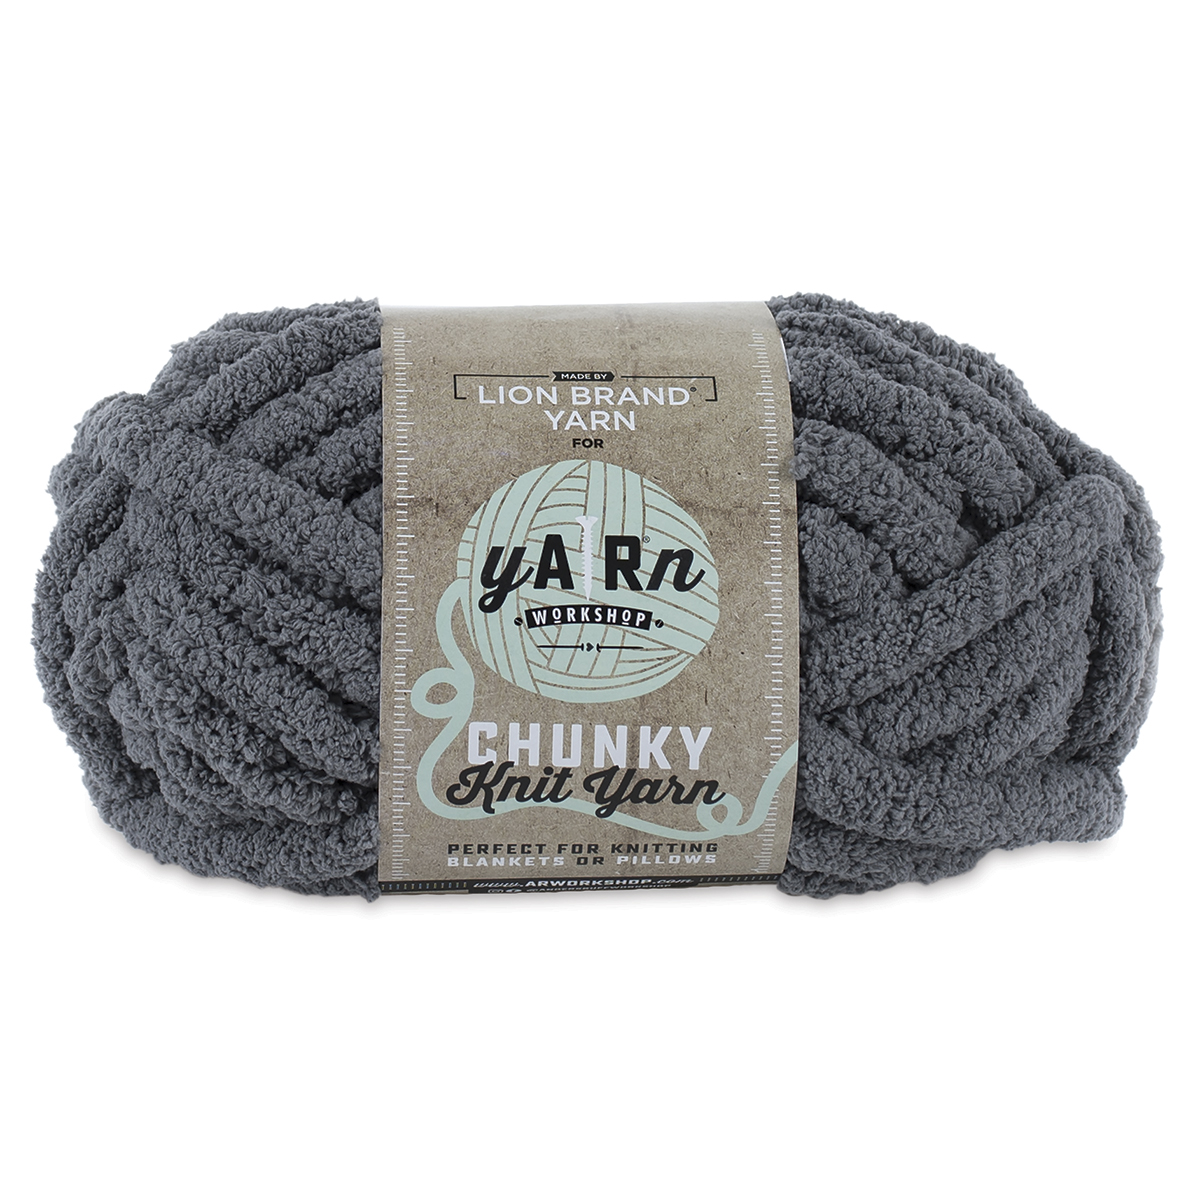 Lion Brand AR Workshop Chunky Knit Yarn